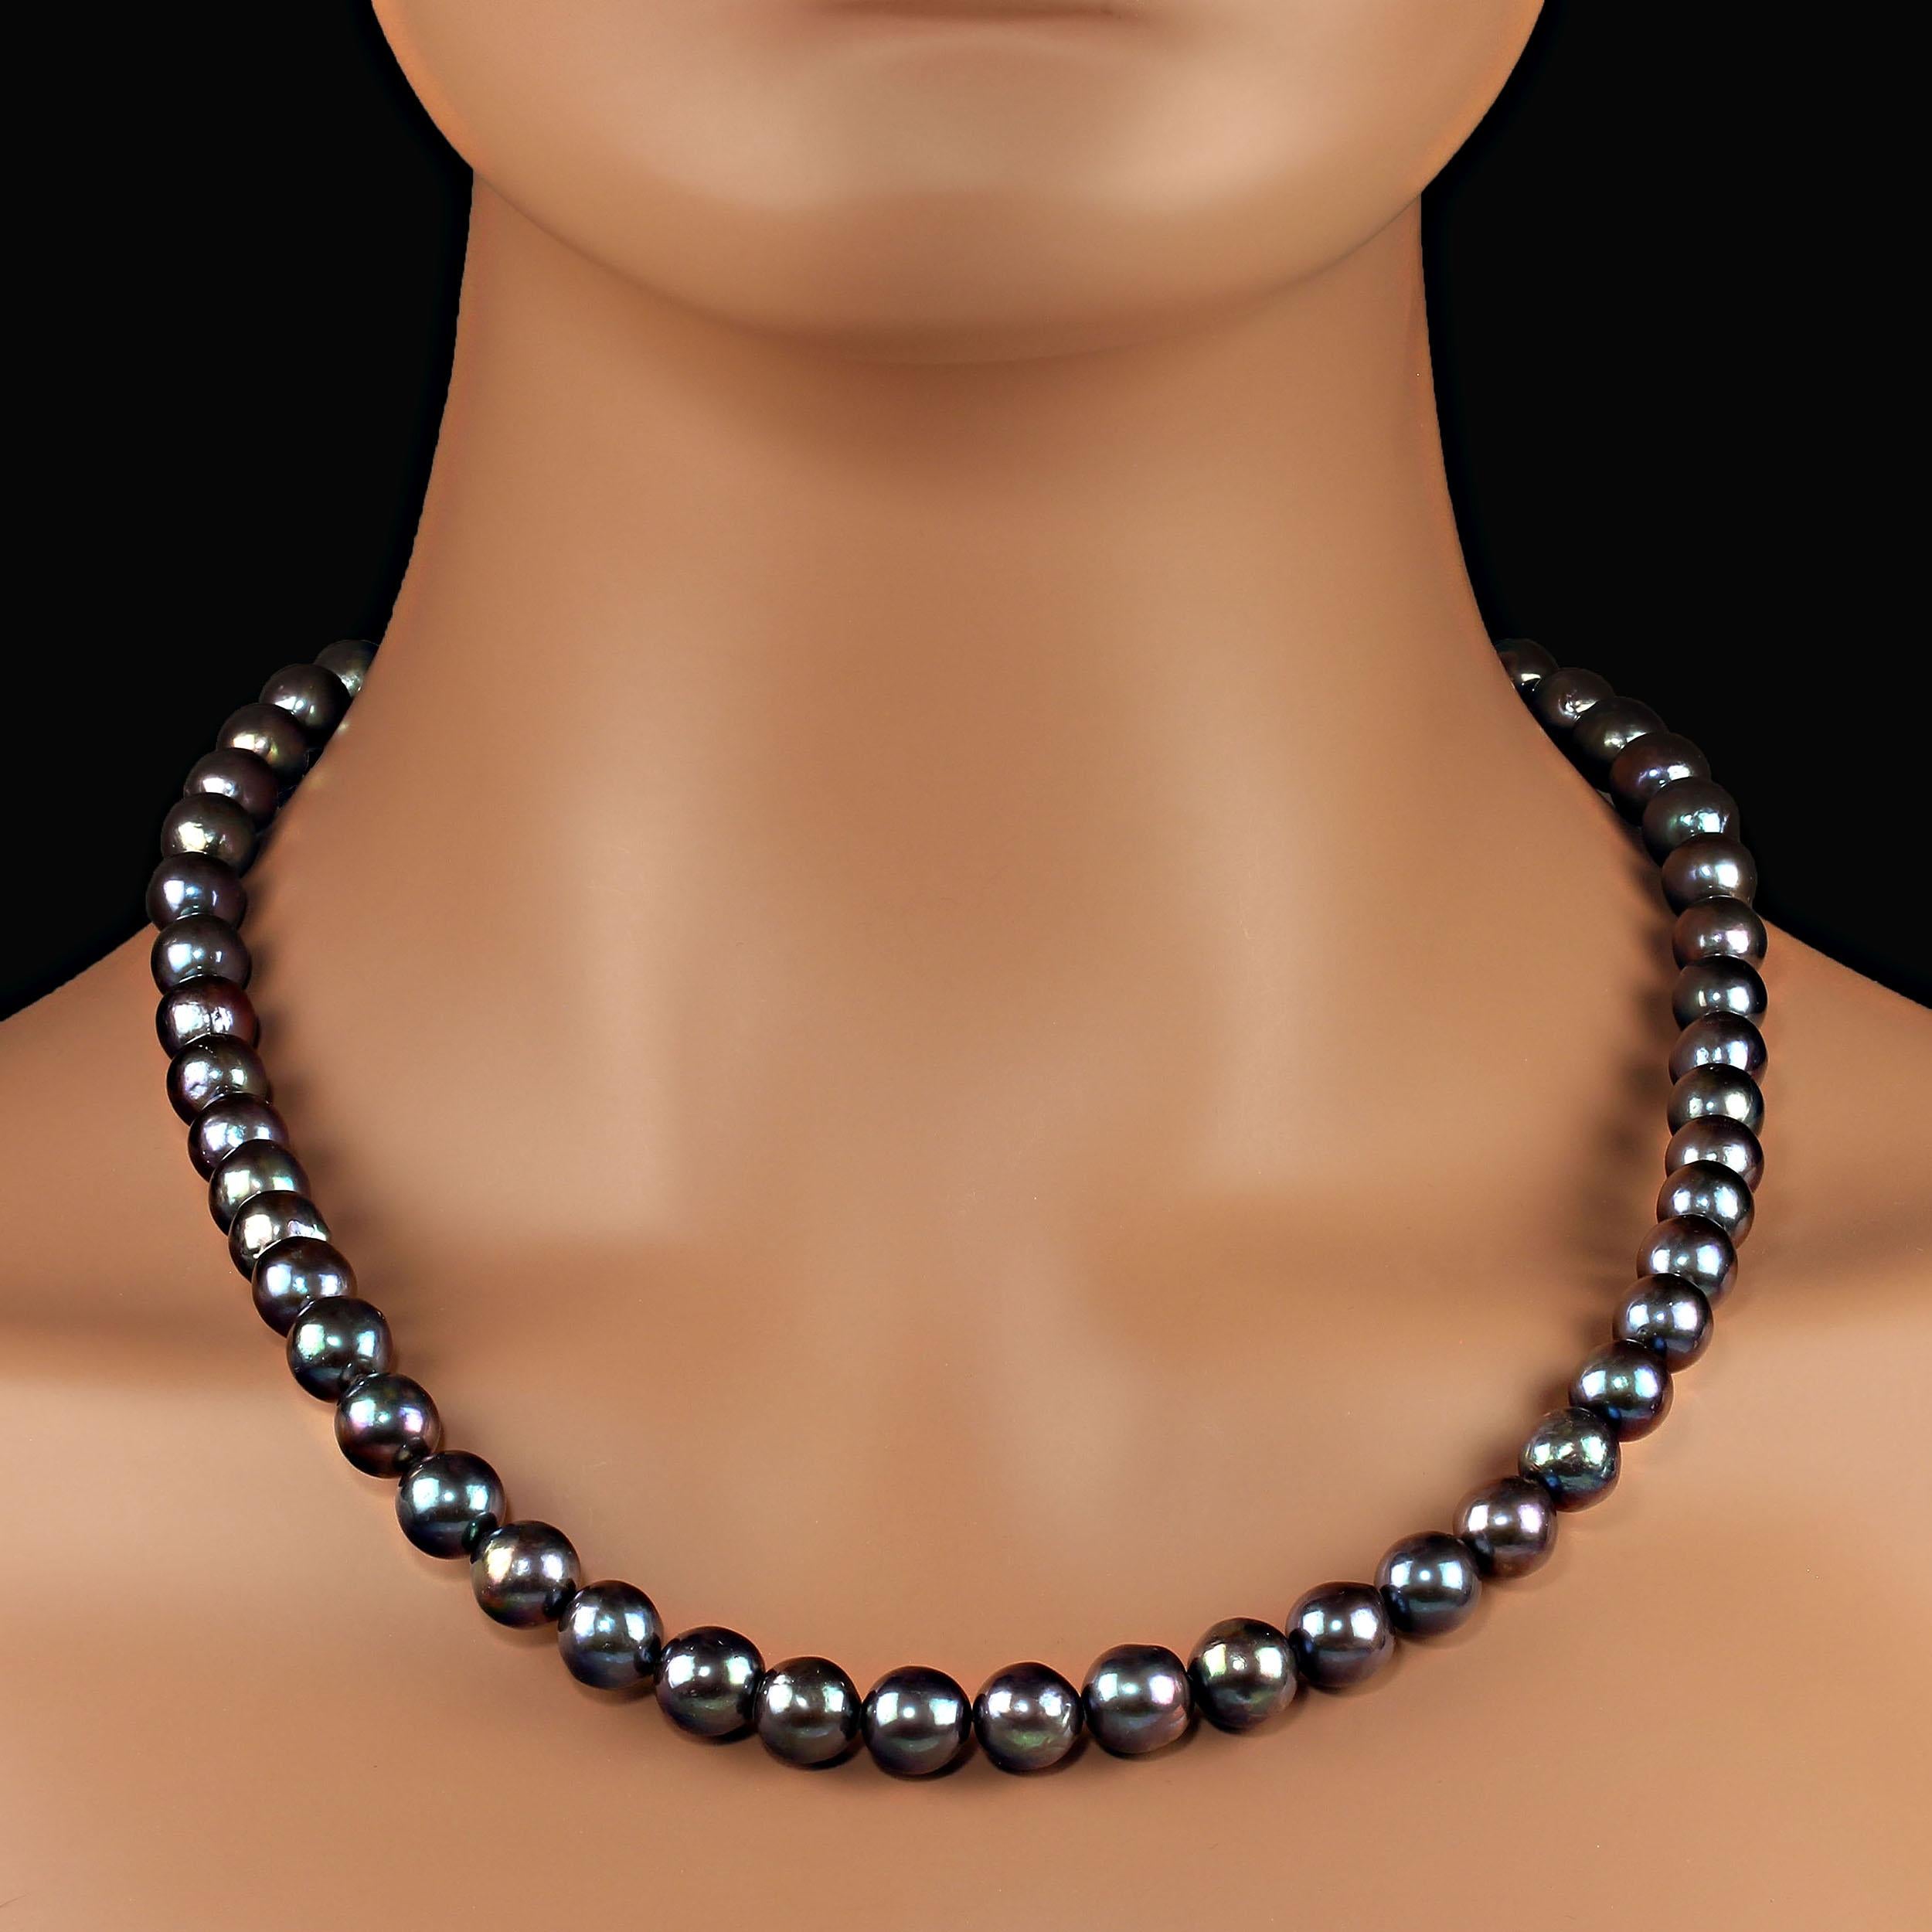 10MM Blau/Grün schillernde Perlenkette mit violetten Reflexen.  Diese wunderschöne 21-Zoll-Perlenkette ist ein wahres Vergnügen zu tragen.  Die Halskette hat einen Karabinerverschluss aus antikem Sterlingsilber mit Diamantsplittern. MN2368
Siehe das